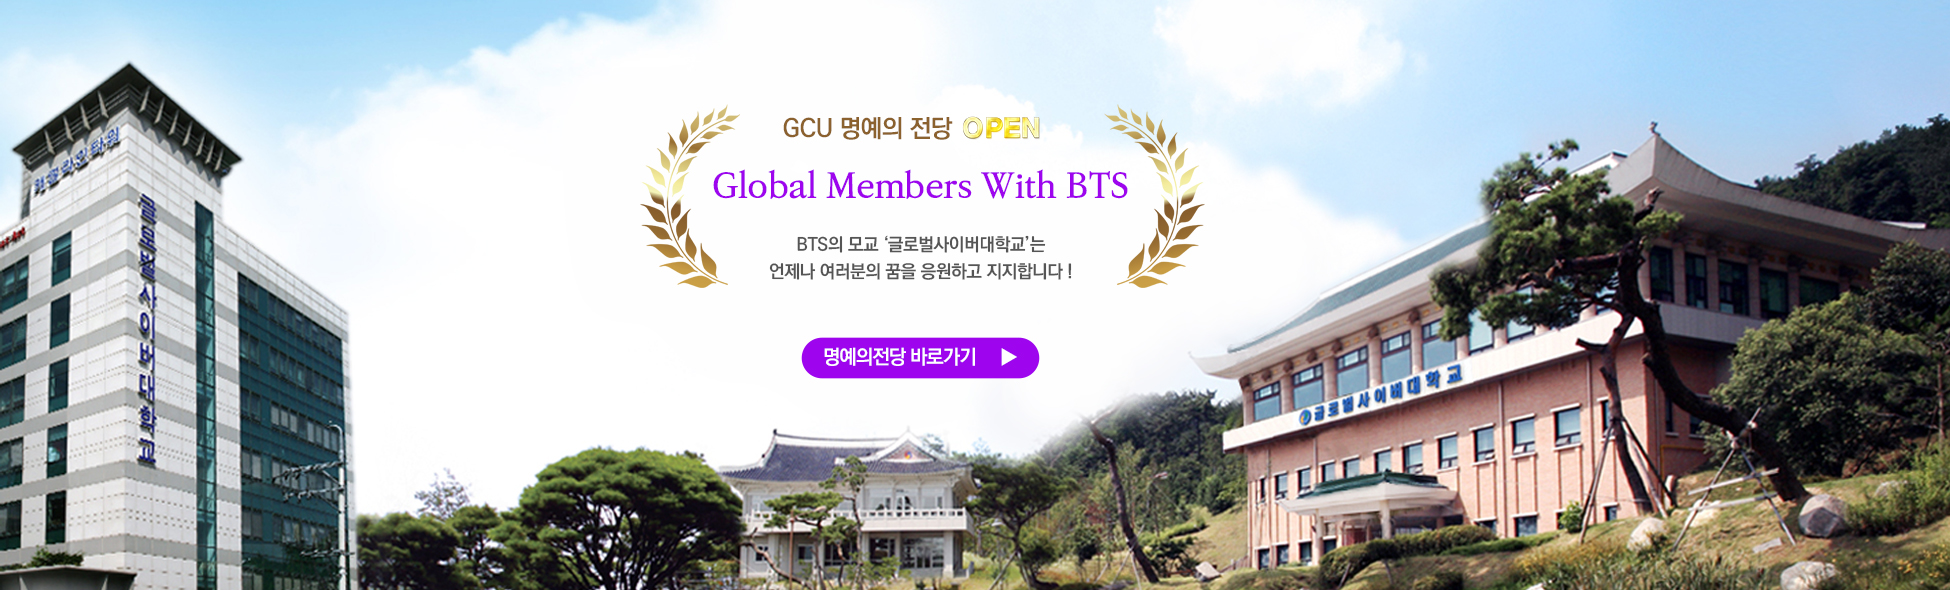 gcu 명예의 전당 OPEN Global Members With BTS bts의 모교 ‘글로벌사이버대학교’는 언제나 여러분의 꿈을 응원하고 지지합니다 ! 명예의전당 바로가기